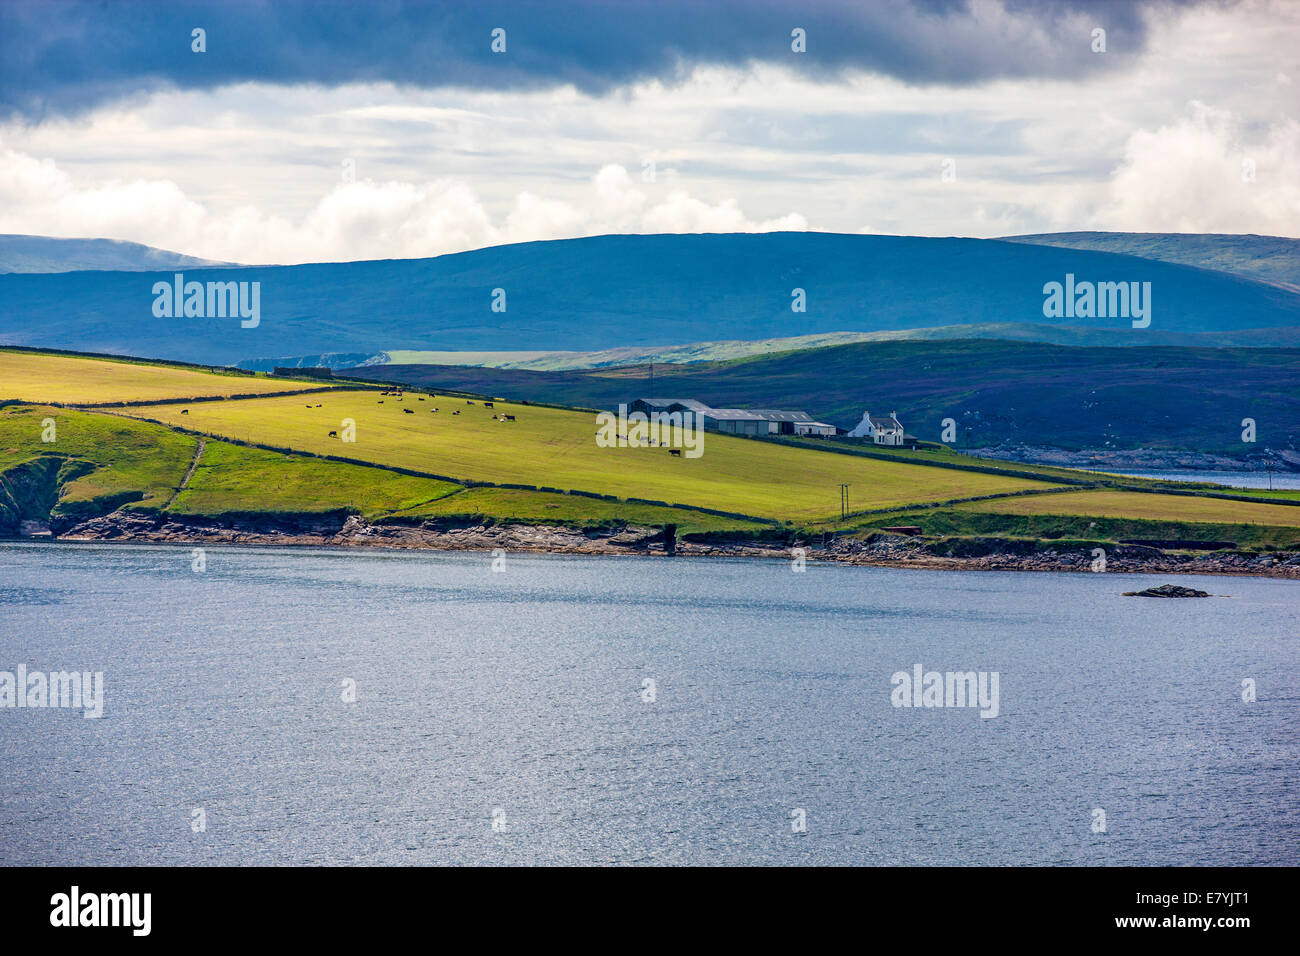 Magnifique paysage de l'île continentale sur les îles Shetland, en Écosse. Vu de Lerwick Banque D'Images